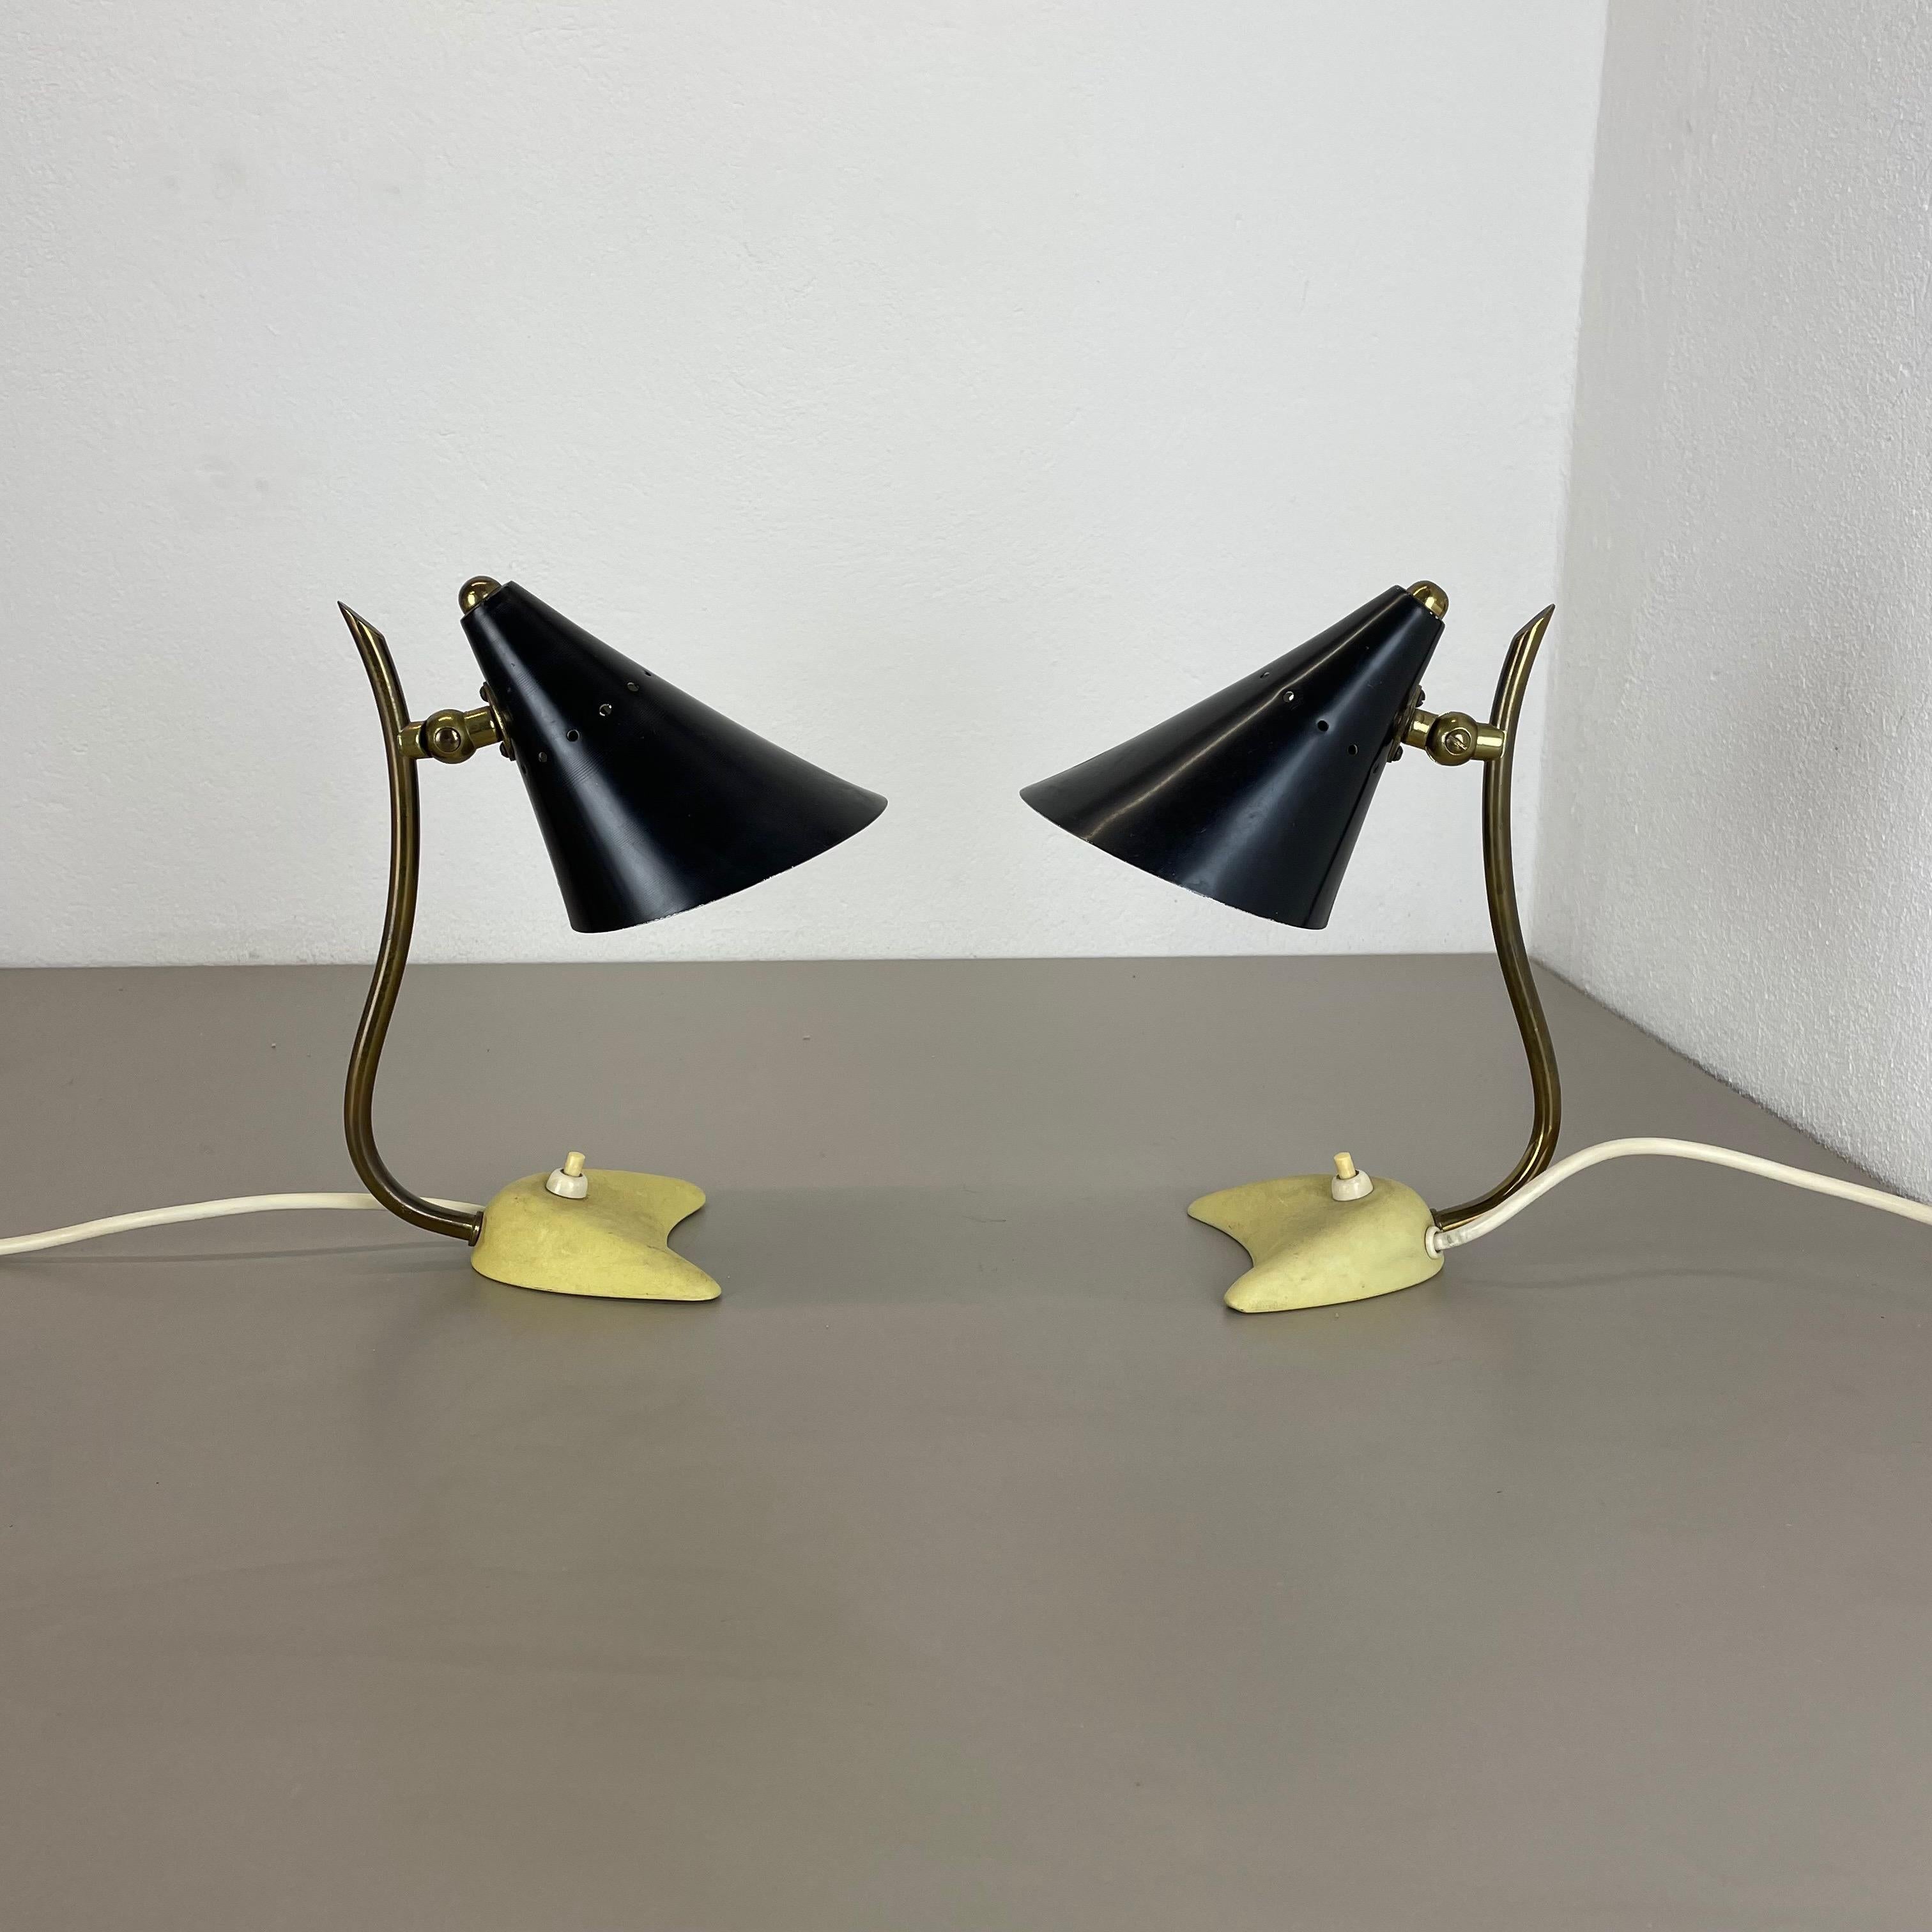 Article :

Lampe de table moderniste en métal et laiton set of 2


Origine :

Italie


Décennie :

1950s





Ce jeu de lumières vintage original a été conçu et produit dans les années 1950 en Italie. La lampe est en métal avec un abat-jour en noir